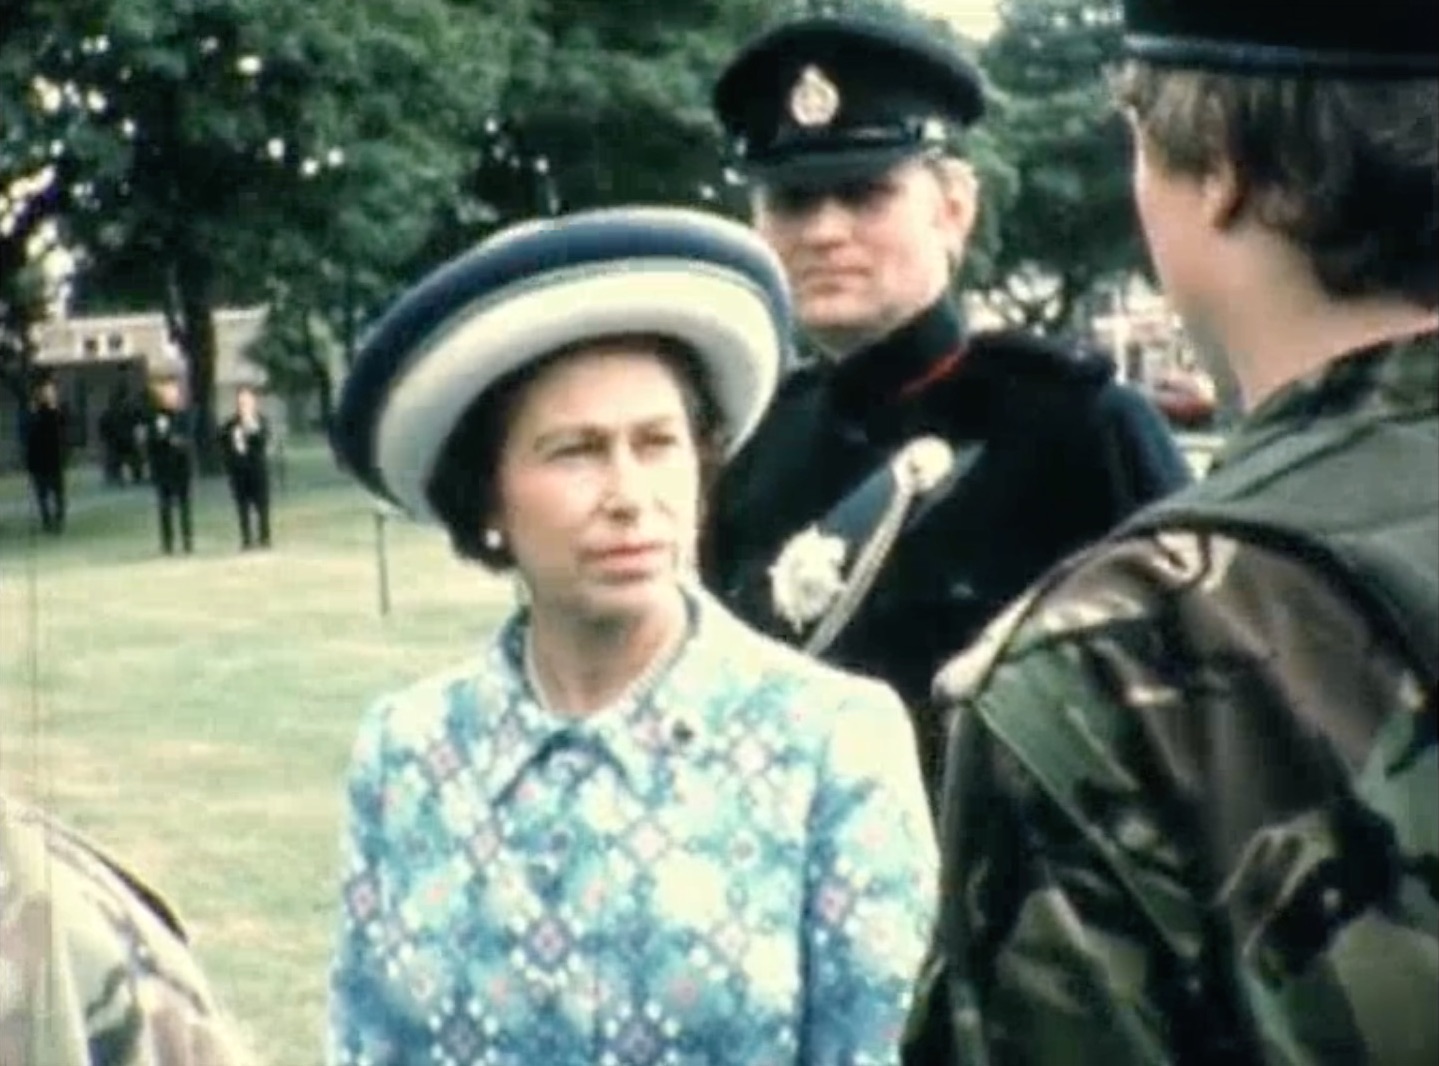 HRMQUEEN ELIZABETH II VISIT TO DOVER in 19777